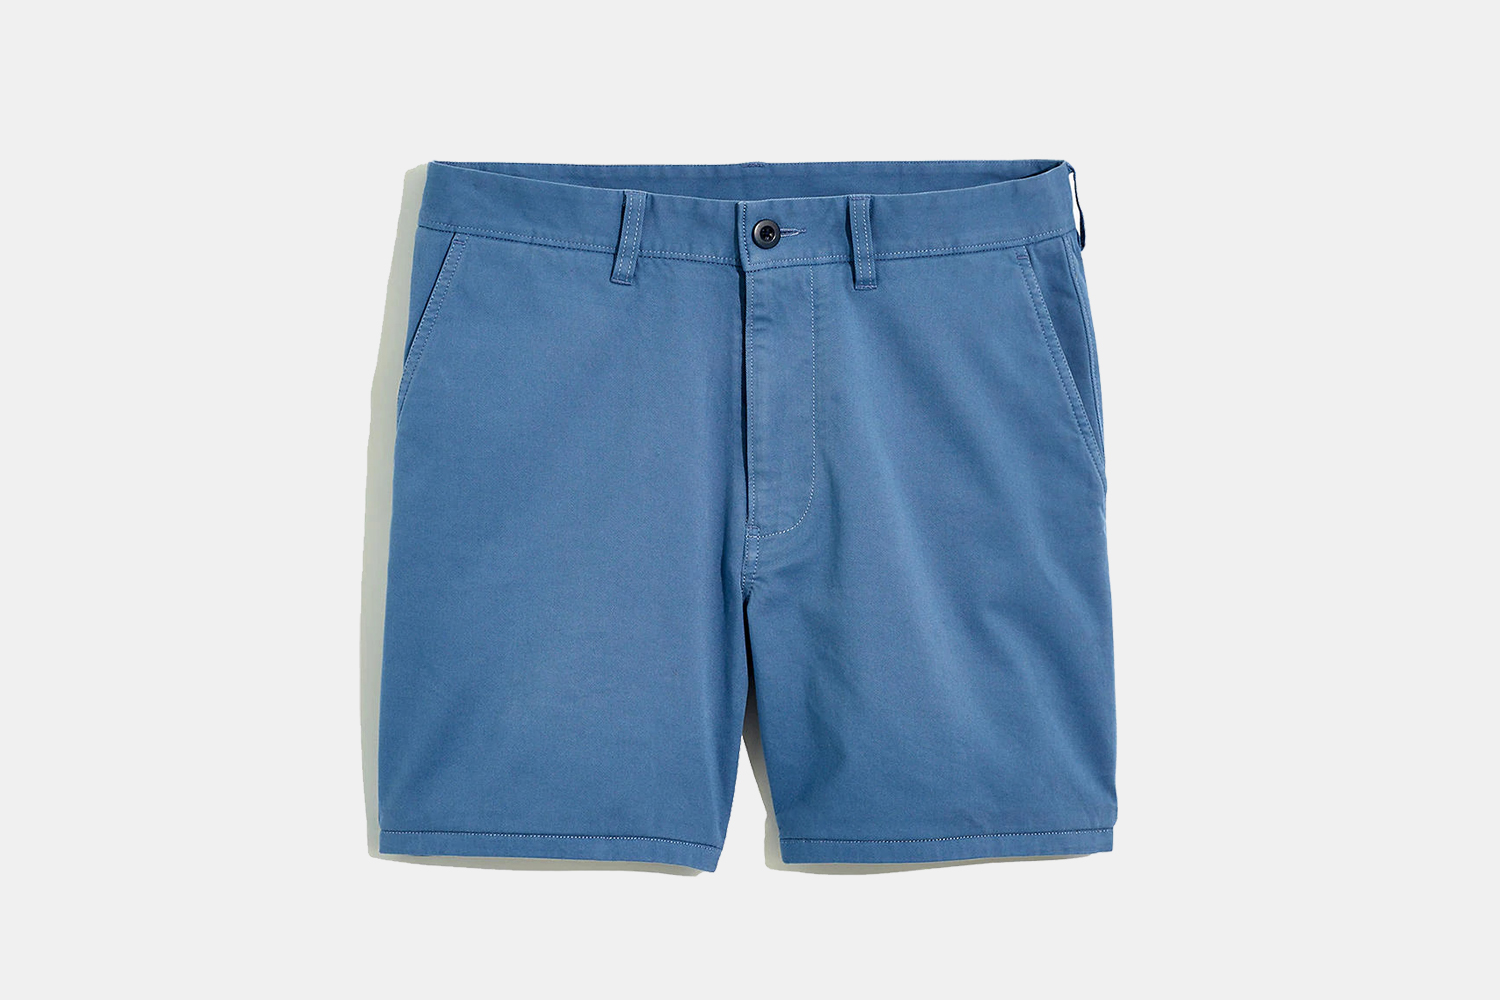 Madewell Men 7-Inch Chino Shorts